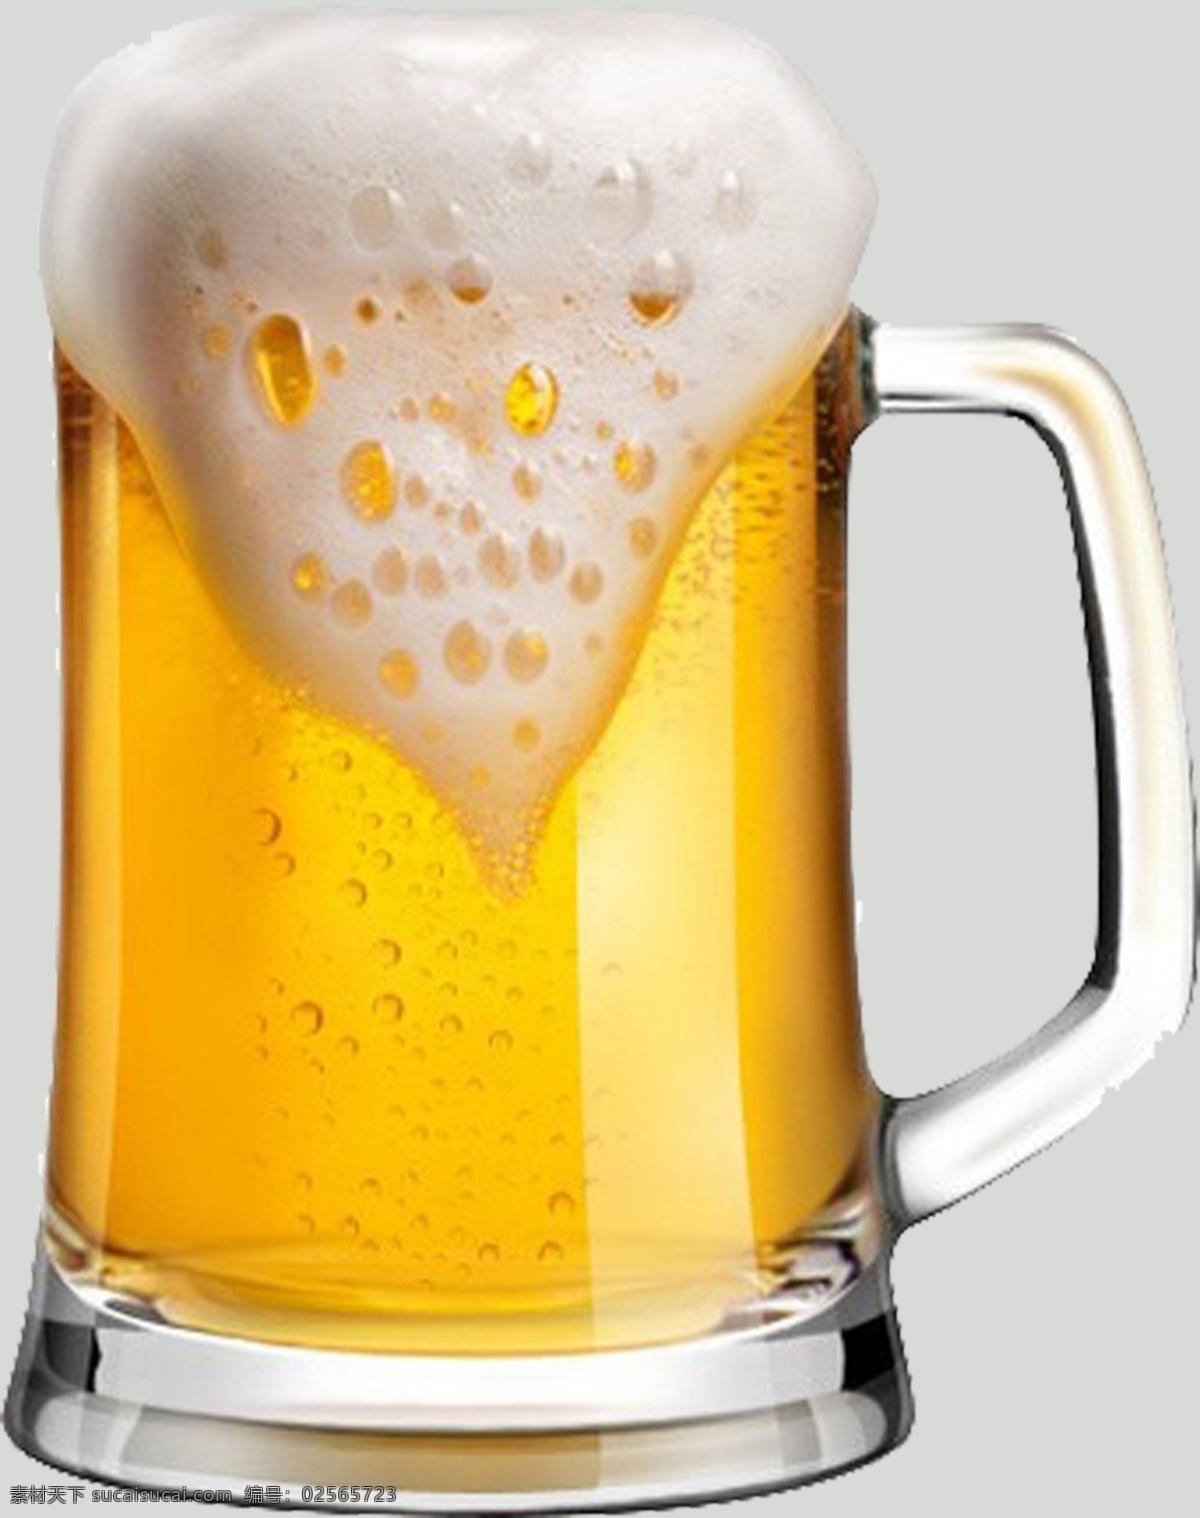 啤酒素材 啤酒 啤酒免扣 免扣啤酒 大杯啤酒 扎啤 啤酒图片 免扣啤酒素材 啤酒免扣素材 生活百科 餐饮美食